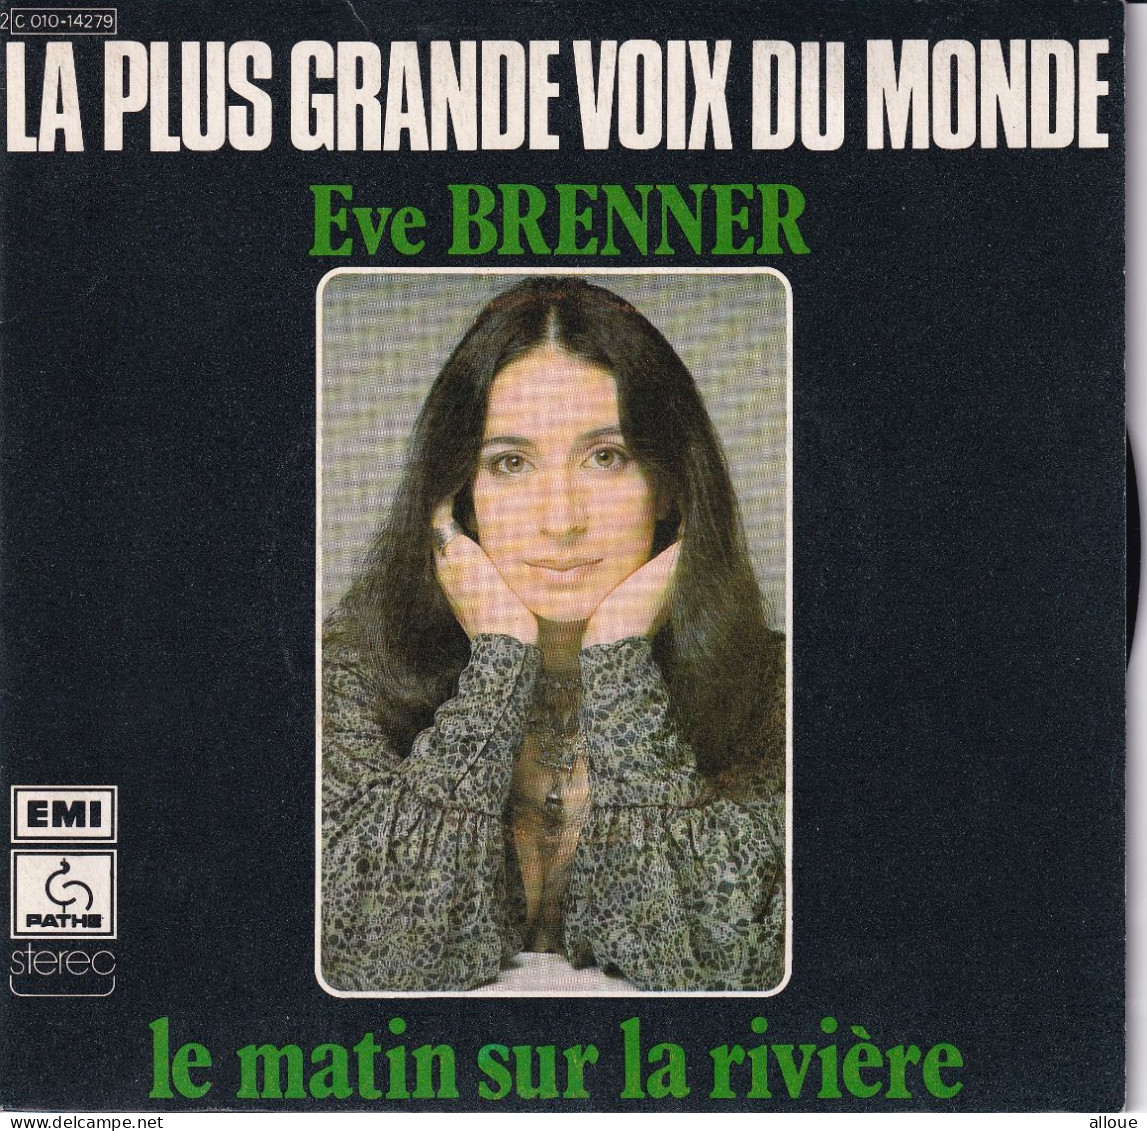 EVE BRENNER - FR SG - LE MATIN SUR LA RIVIERE + 1 - Autres - Musique Française